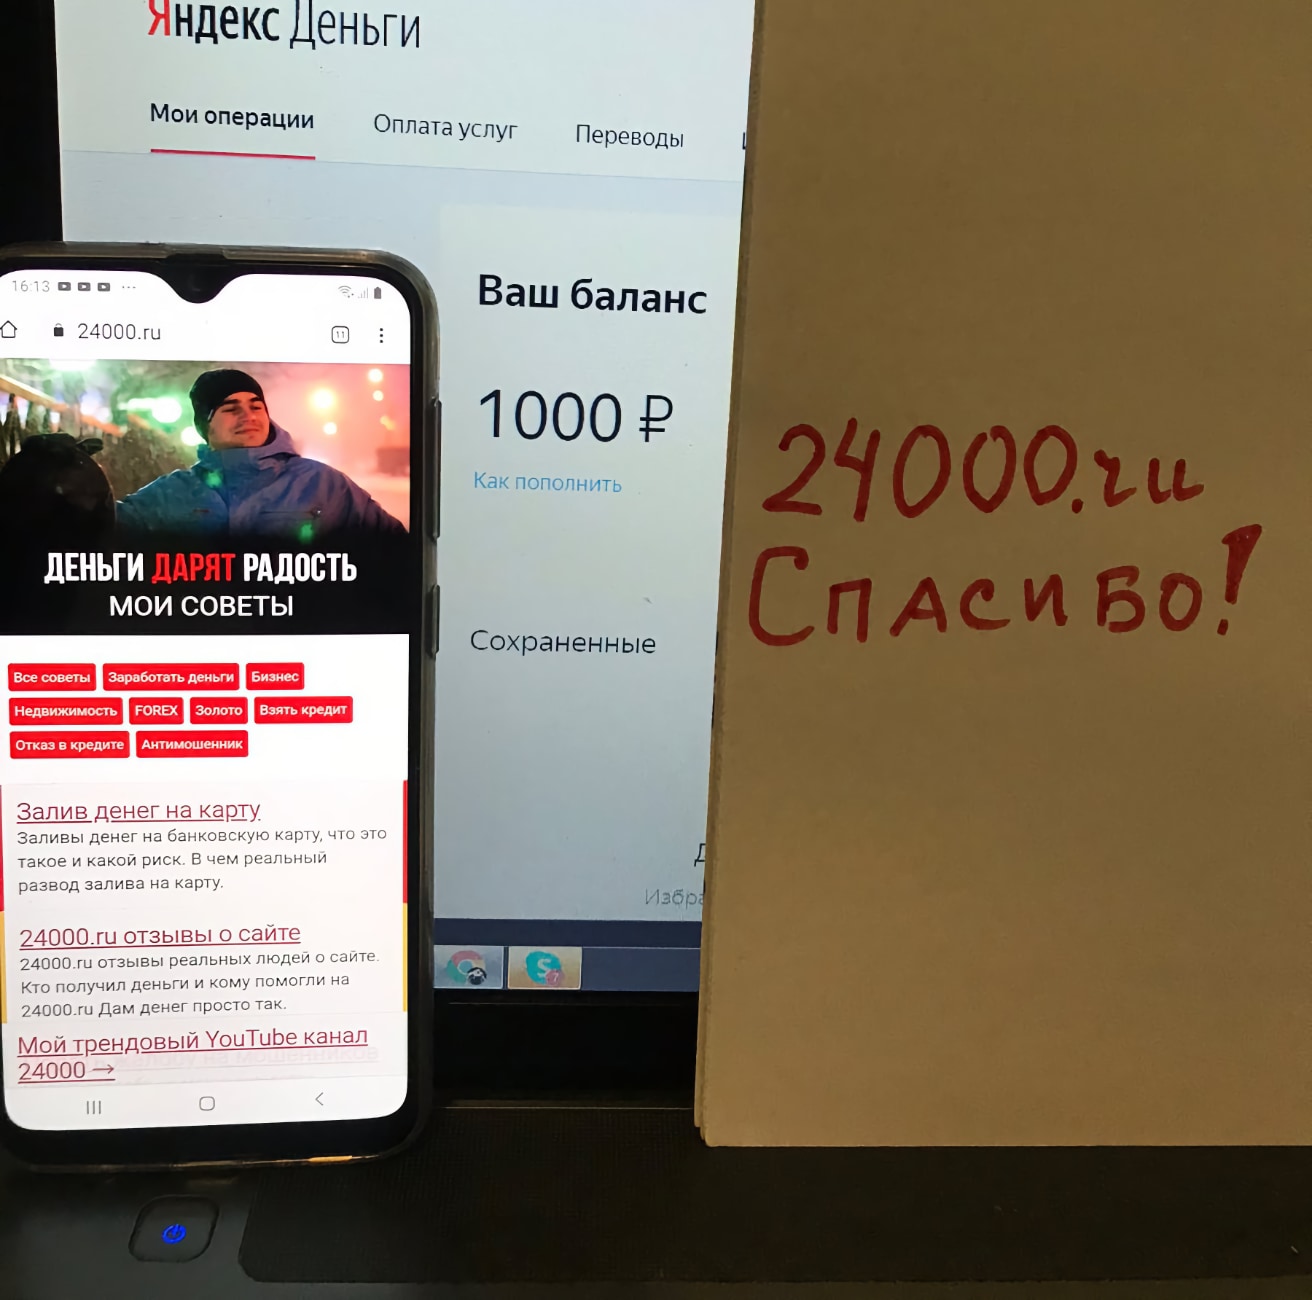 Помощь деньгами в интернете помощь богатых 24000.ru отзывы